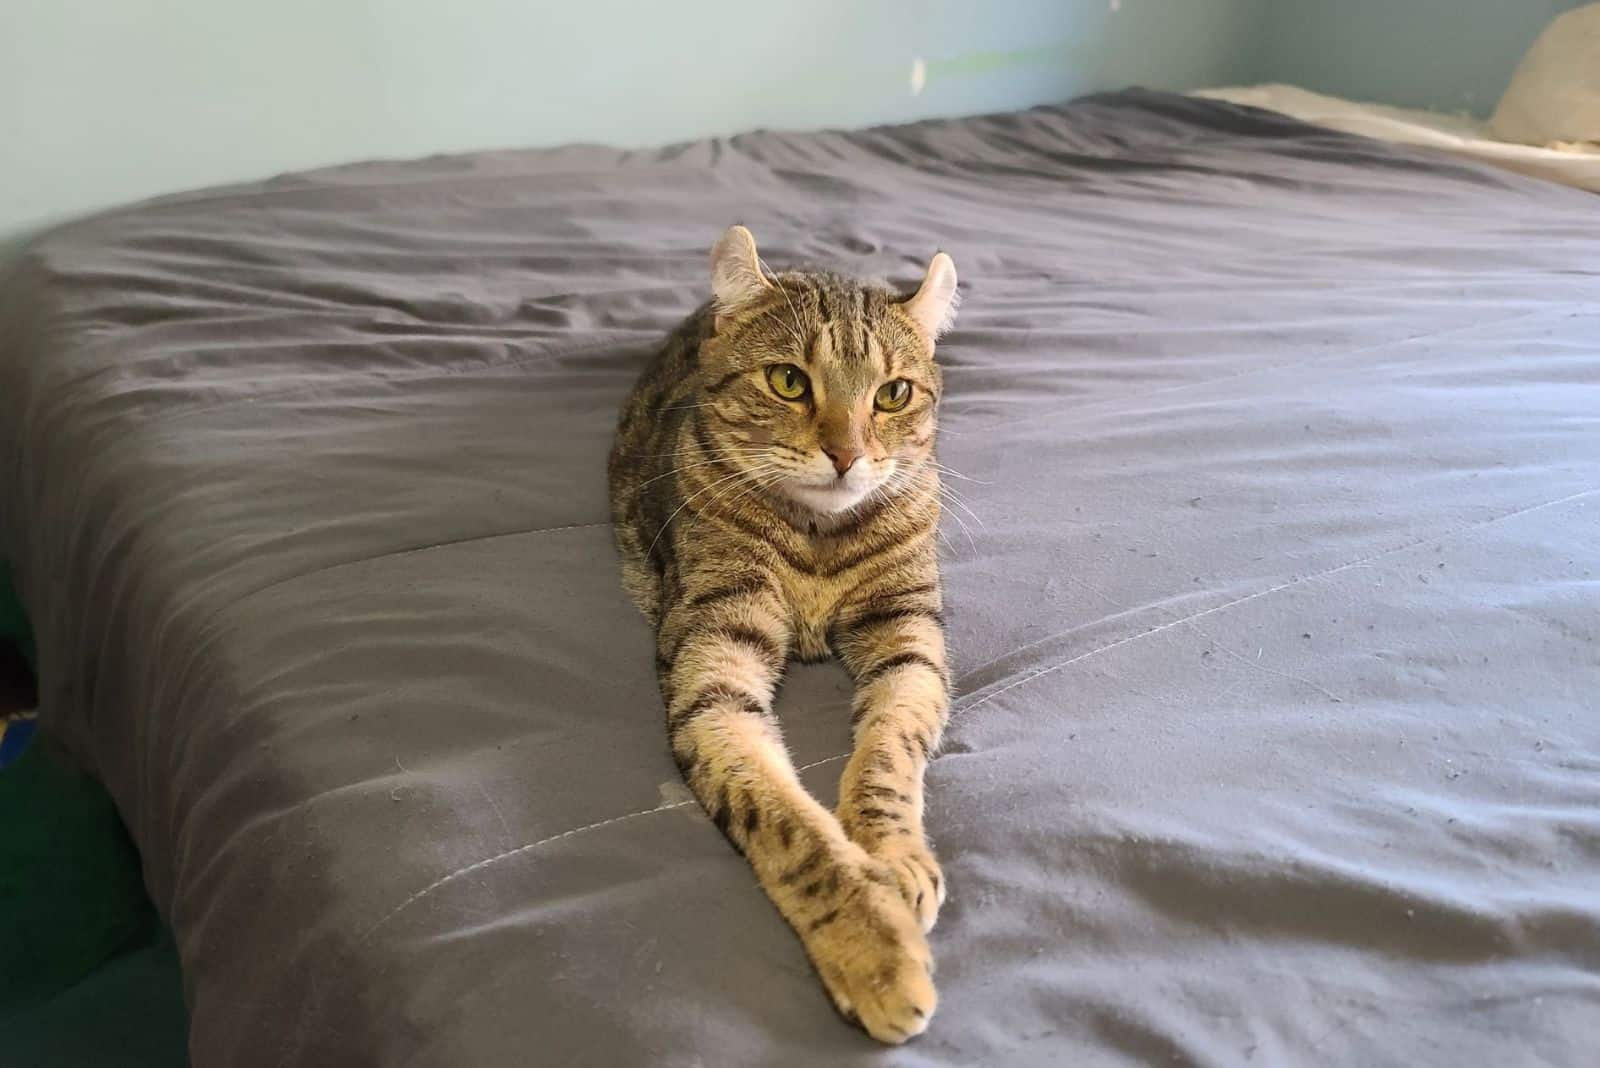 highlander cat resting on a bed